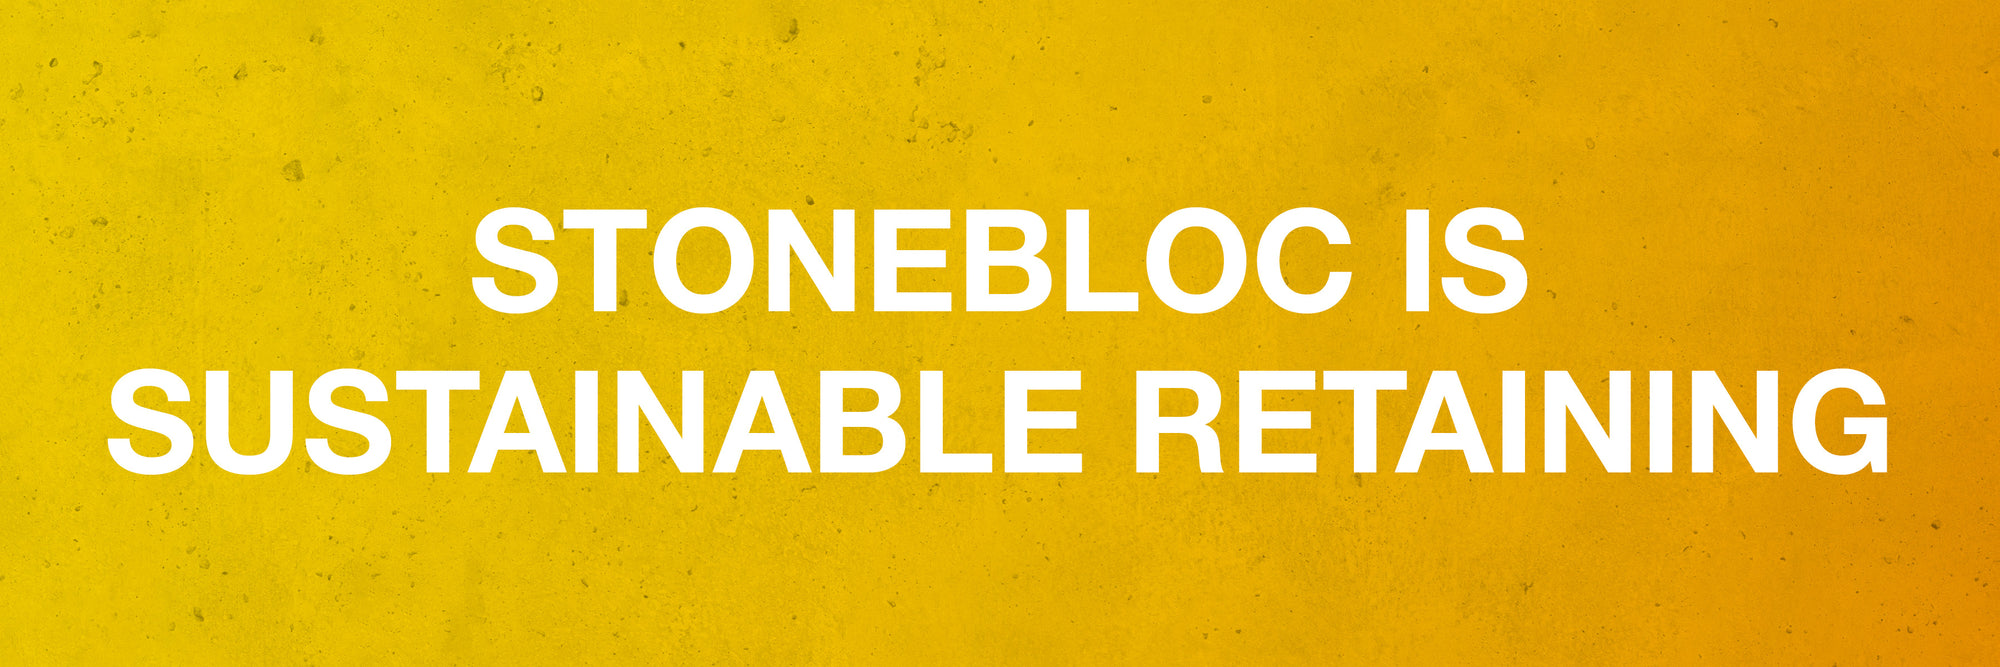 Stonebloc is Sustainable Retaining